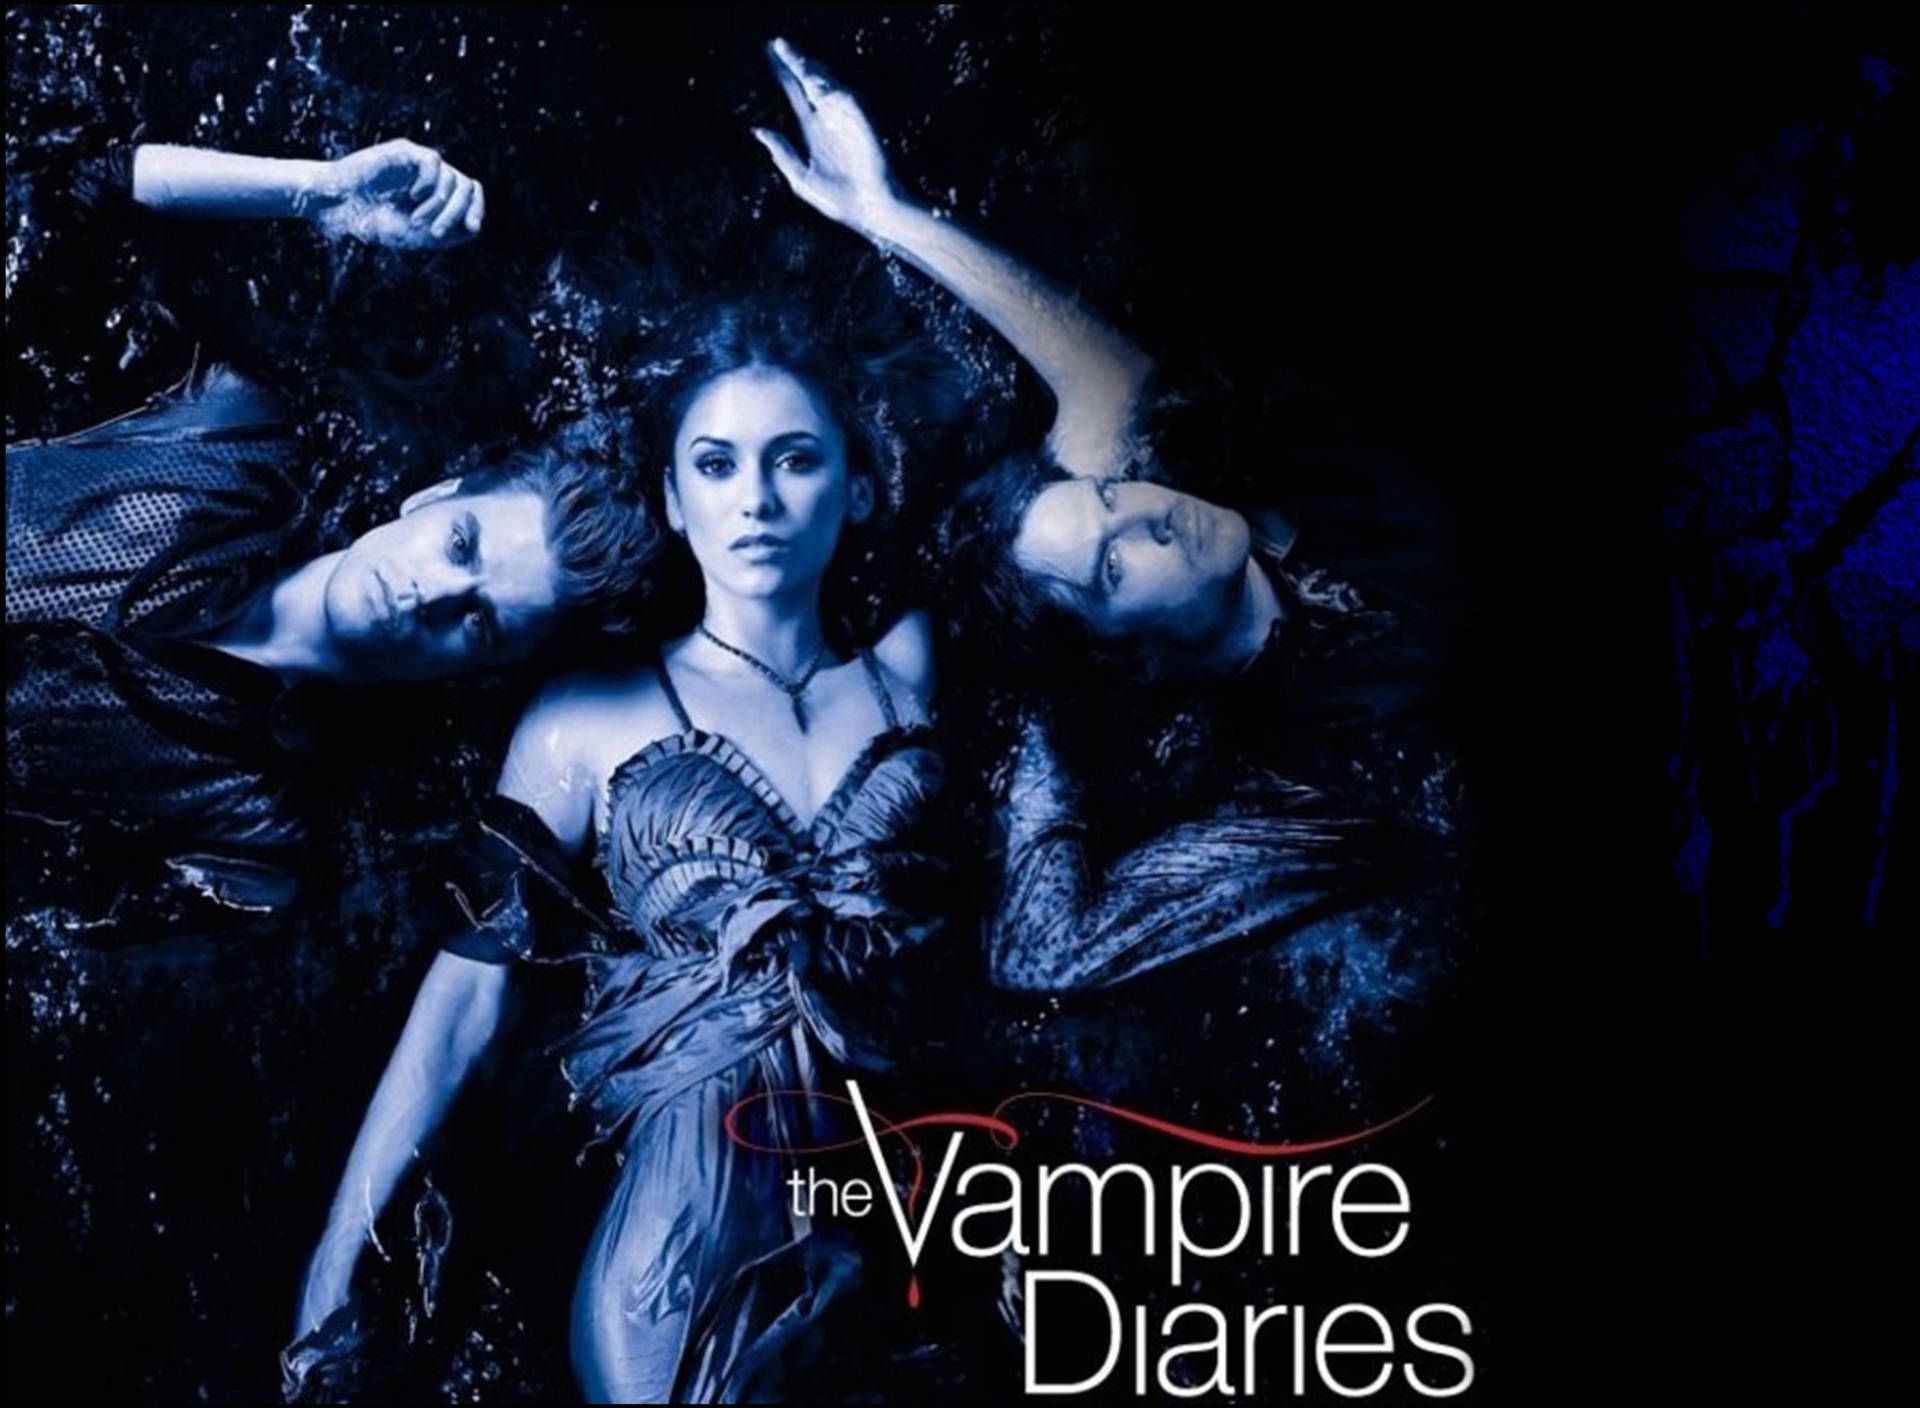 The vampire diaries wallpaper - Vampire